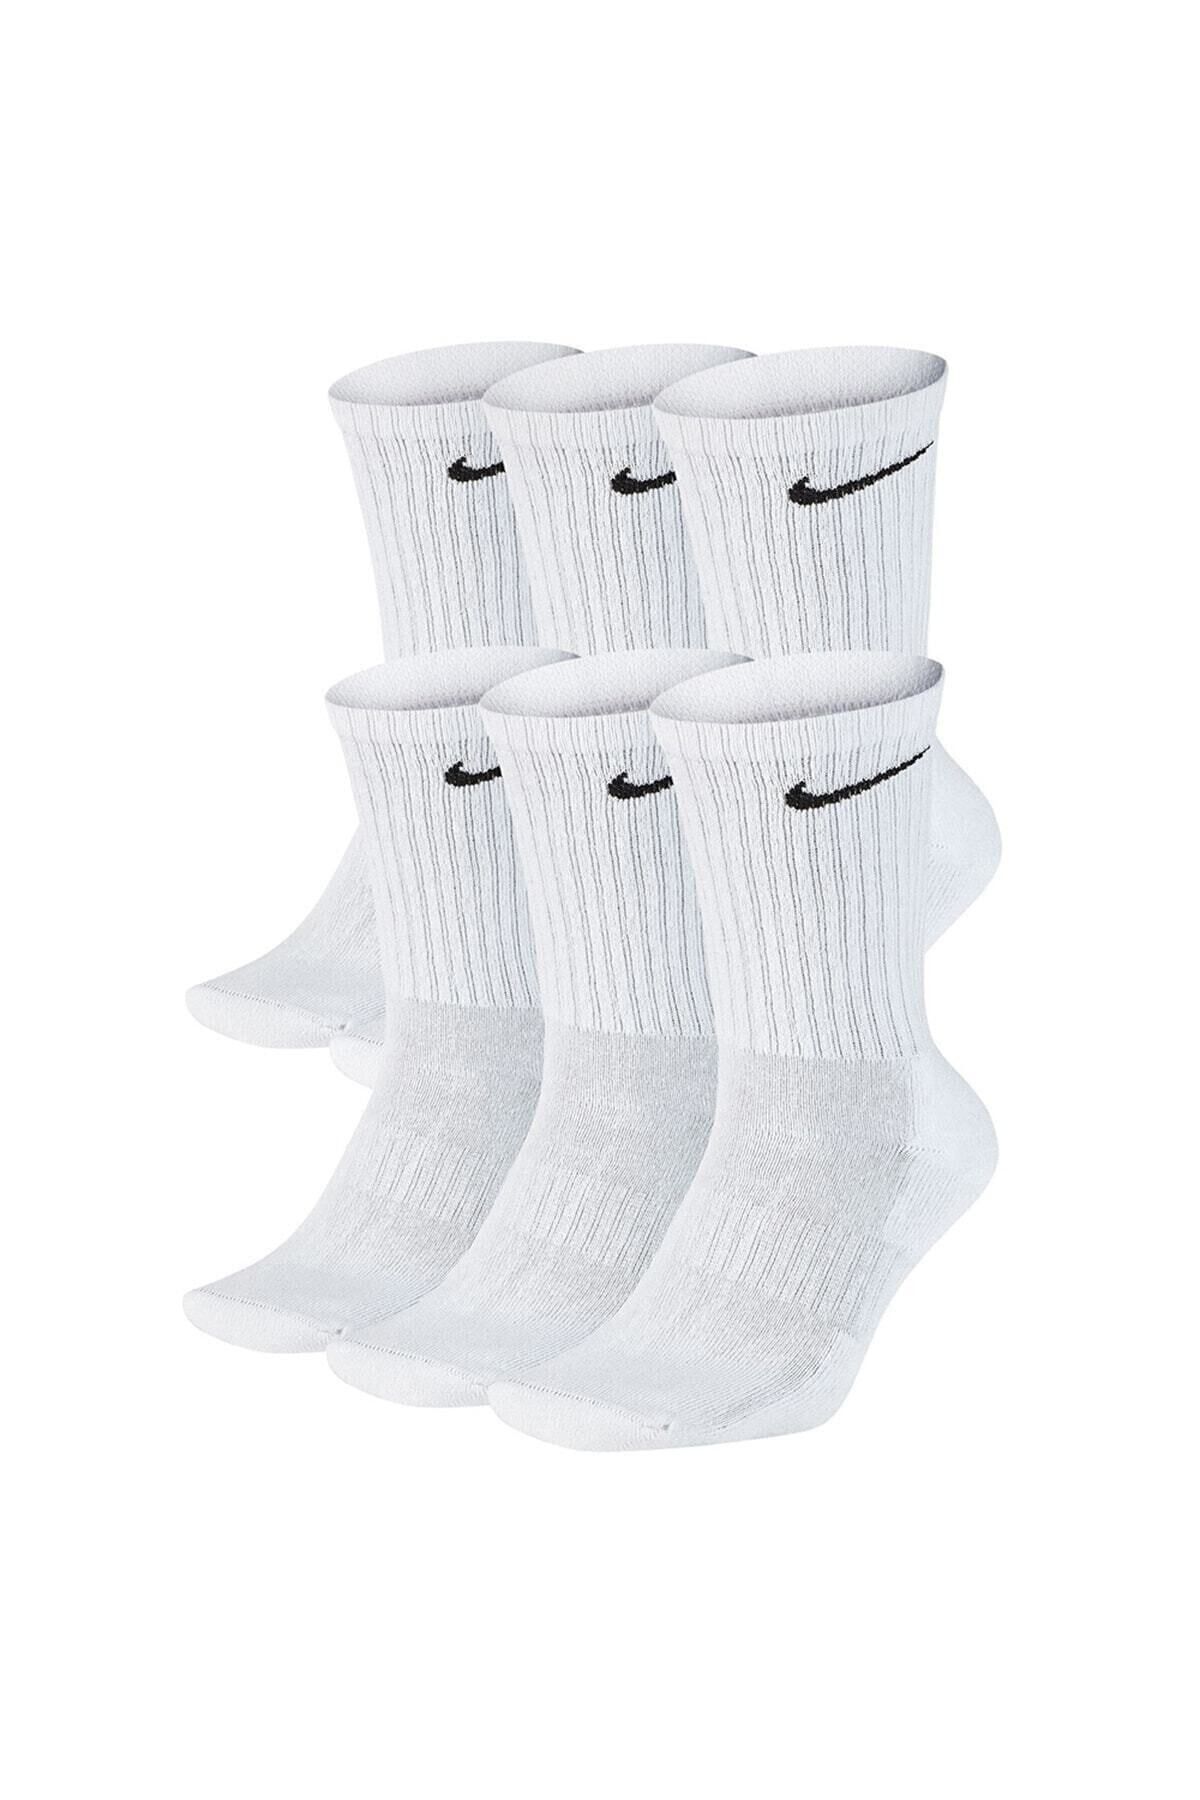 Socks Sirius 6 Çift Pamuklu Erkek Kadın Fitilli Basketbol Futbol Koşu Tenis Beyaz Spor Çorabı